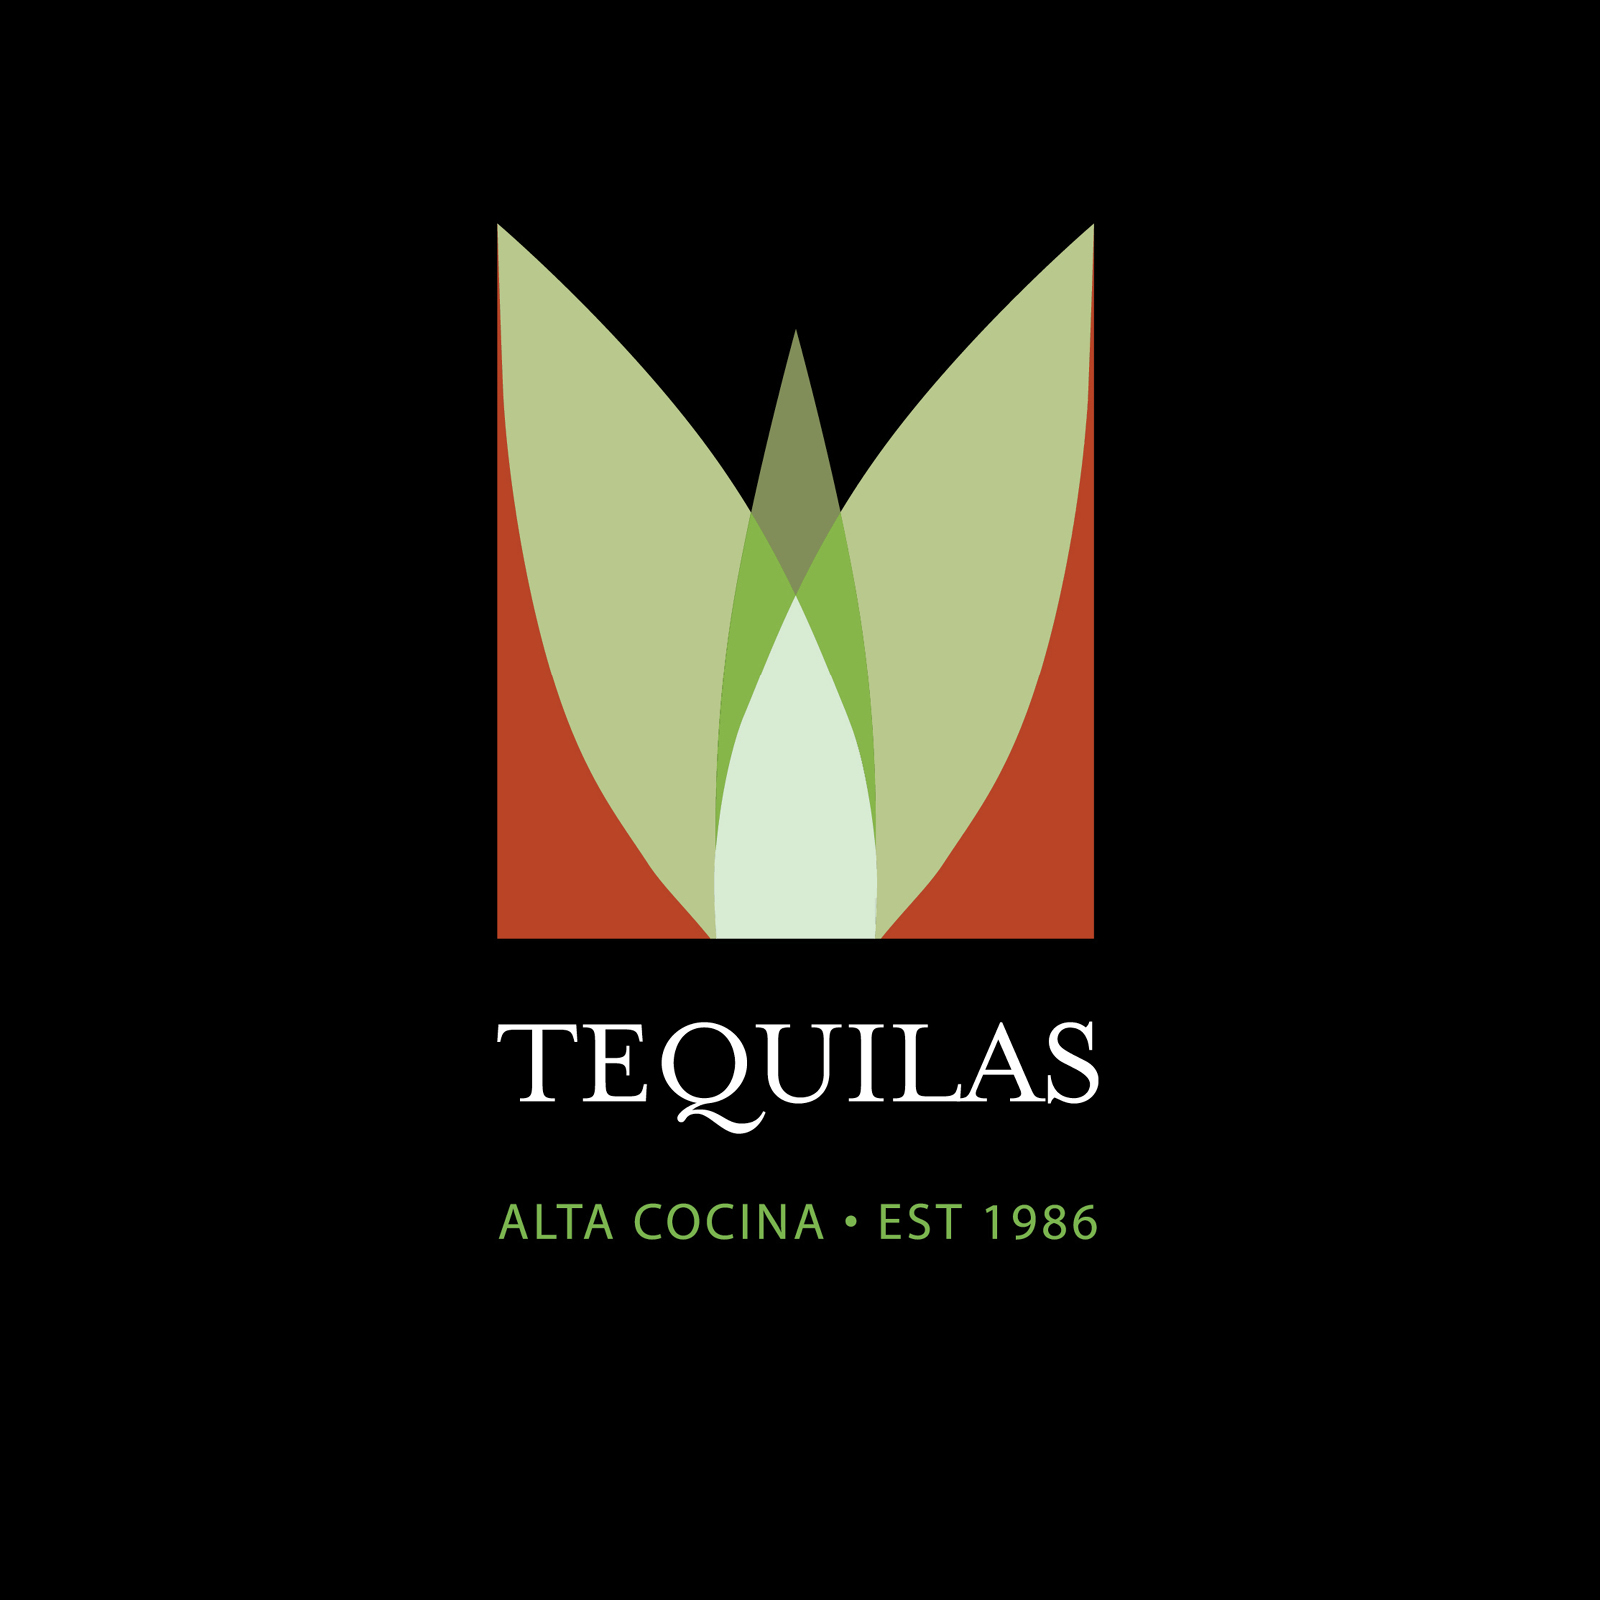 Tequilas Restaurant + Bar